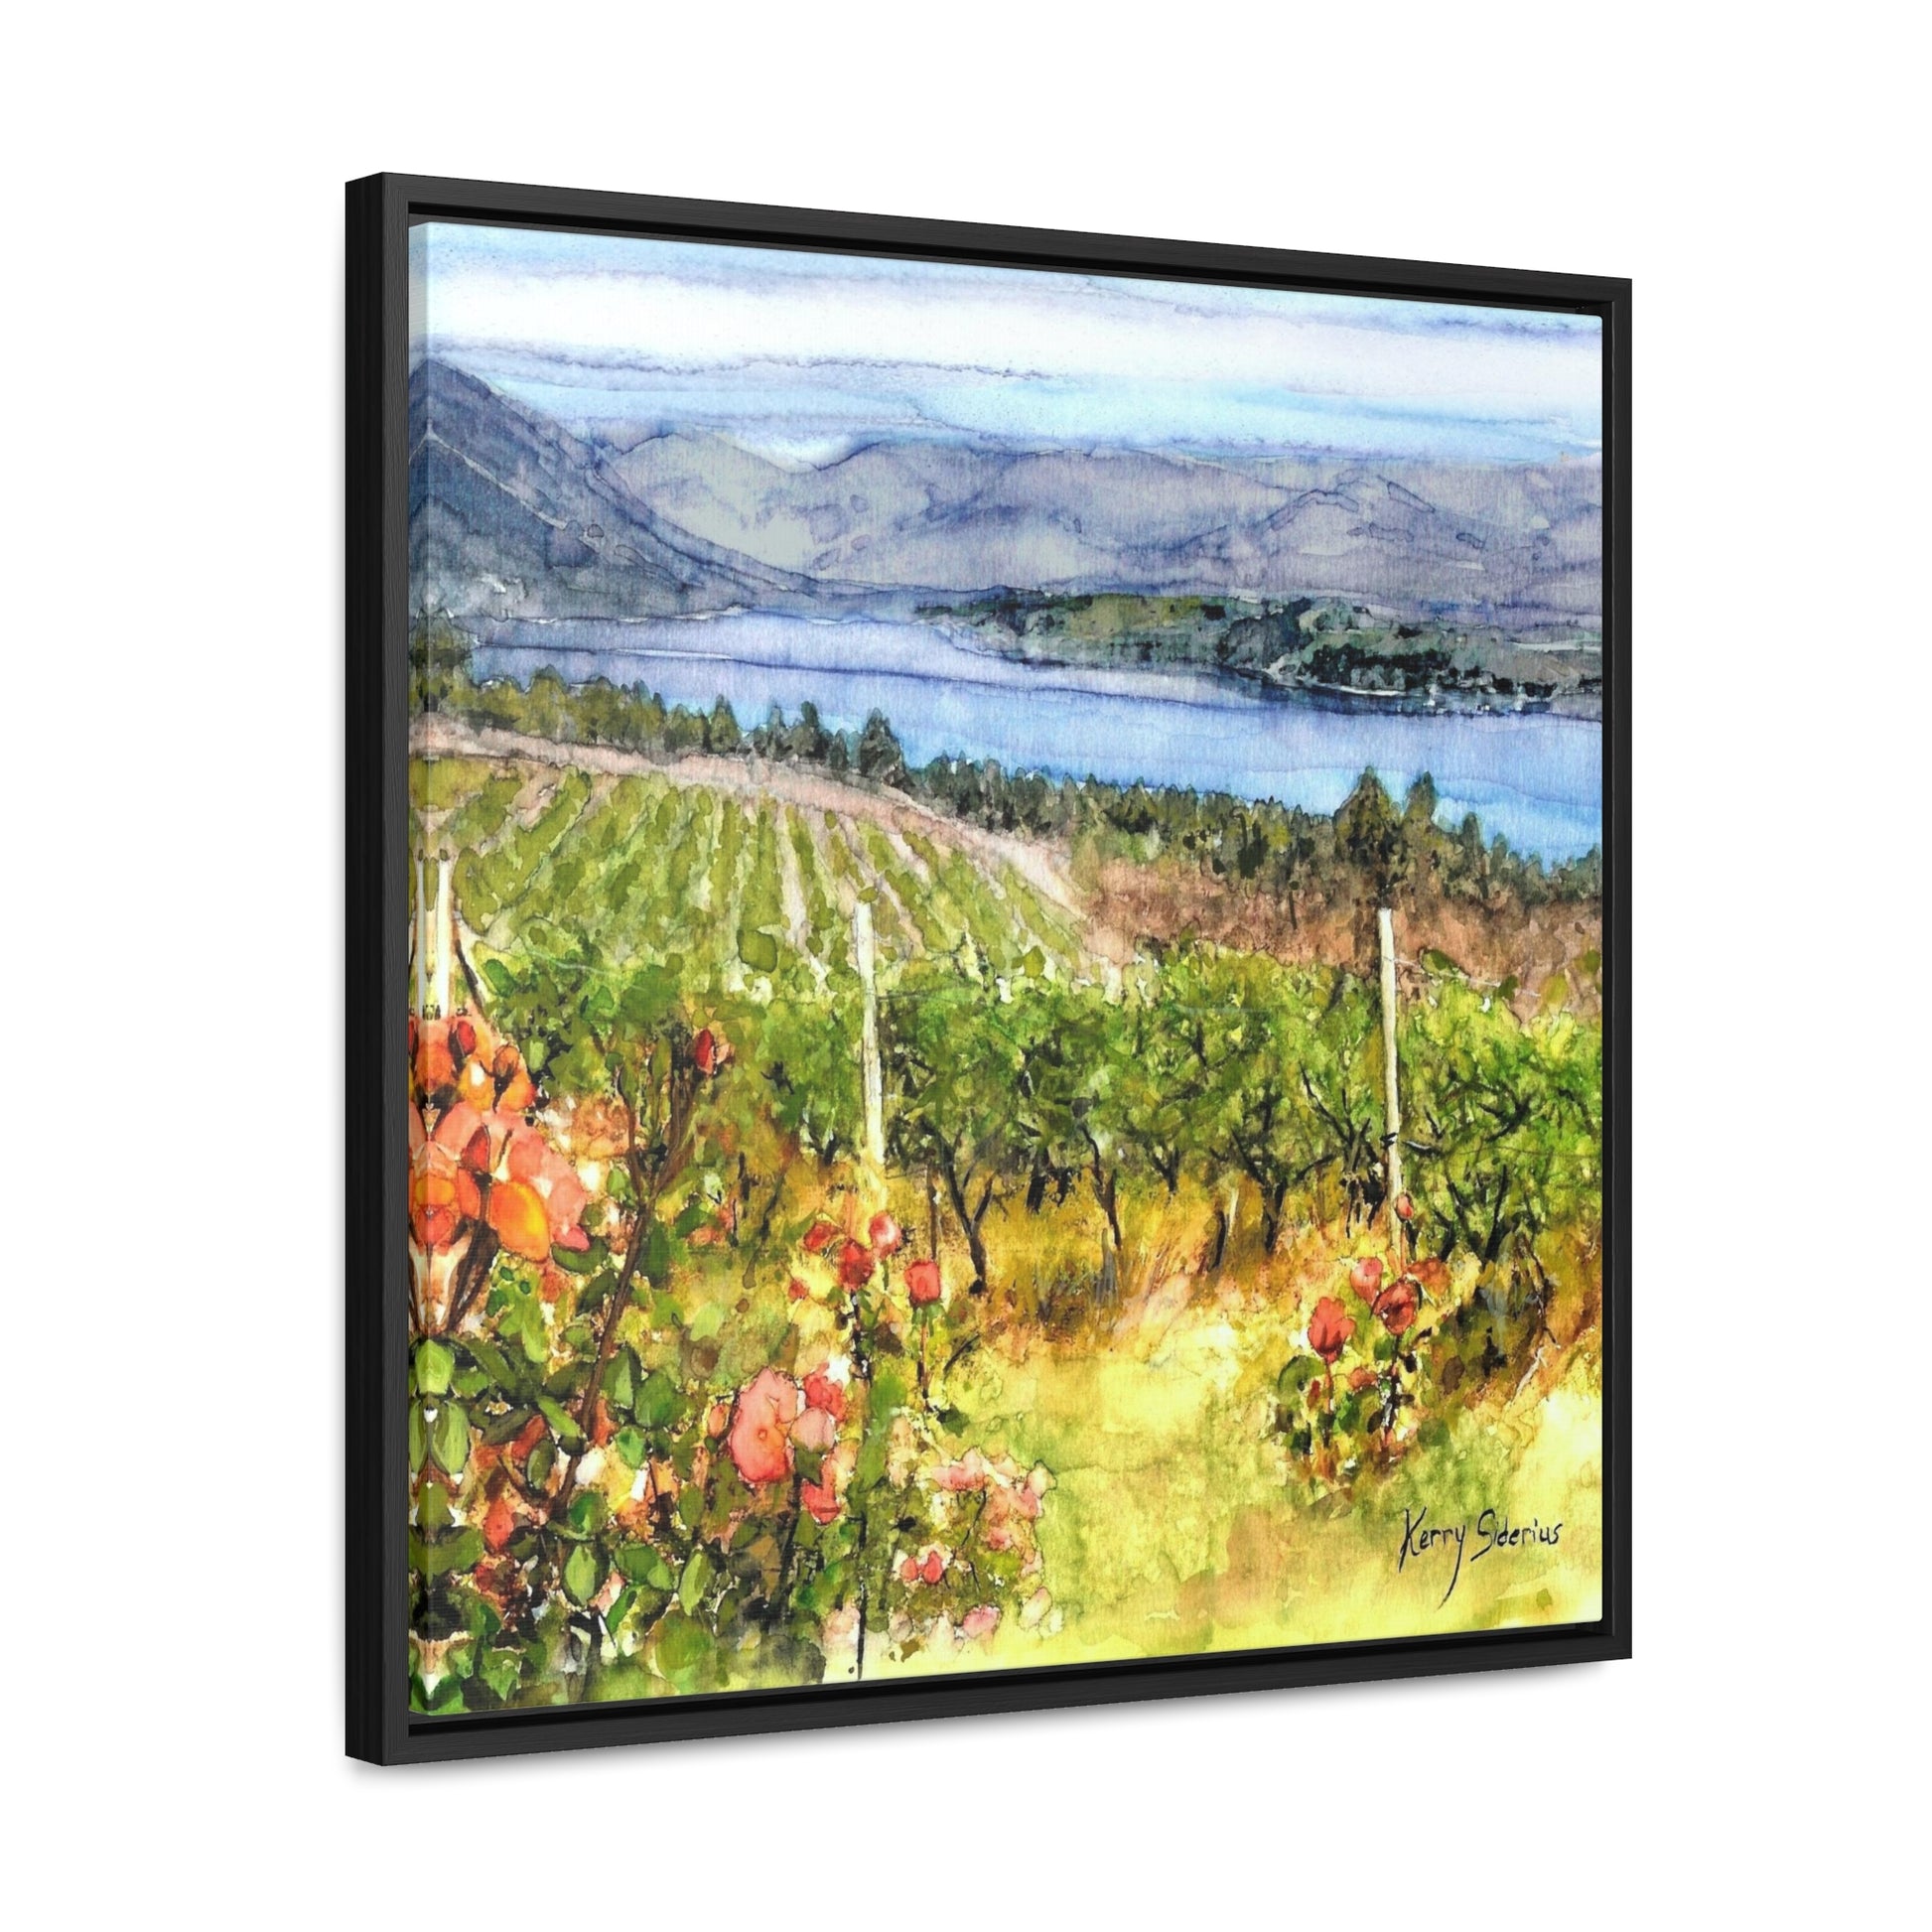 "Lake Chelan Vineyard View Uplake" Gallery Canvas Wraps, Square Frame - Kerry Siderius Art 